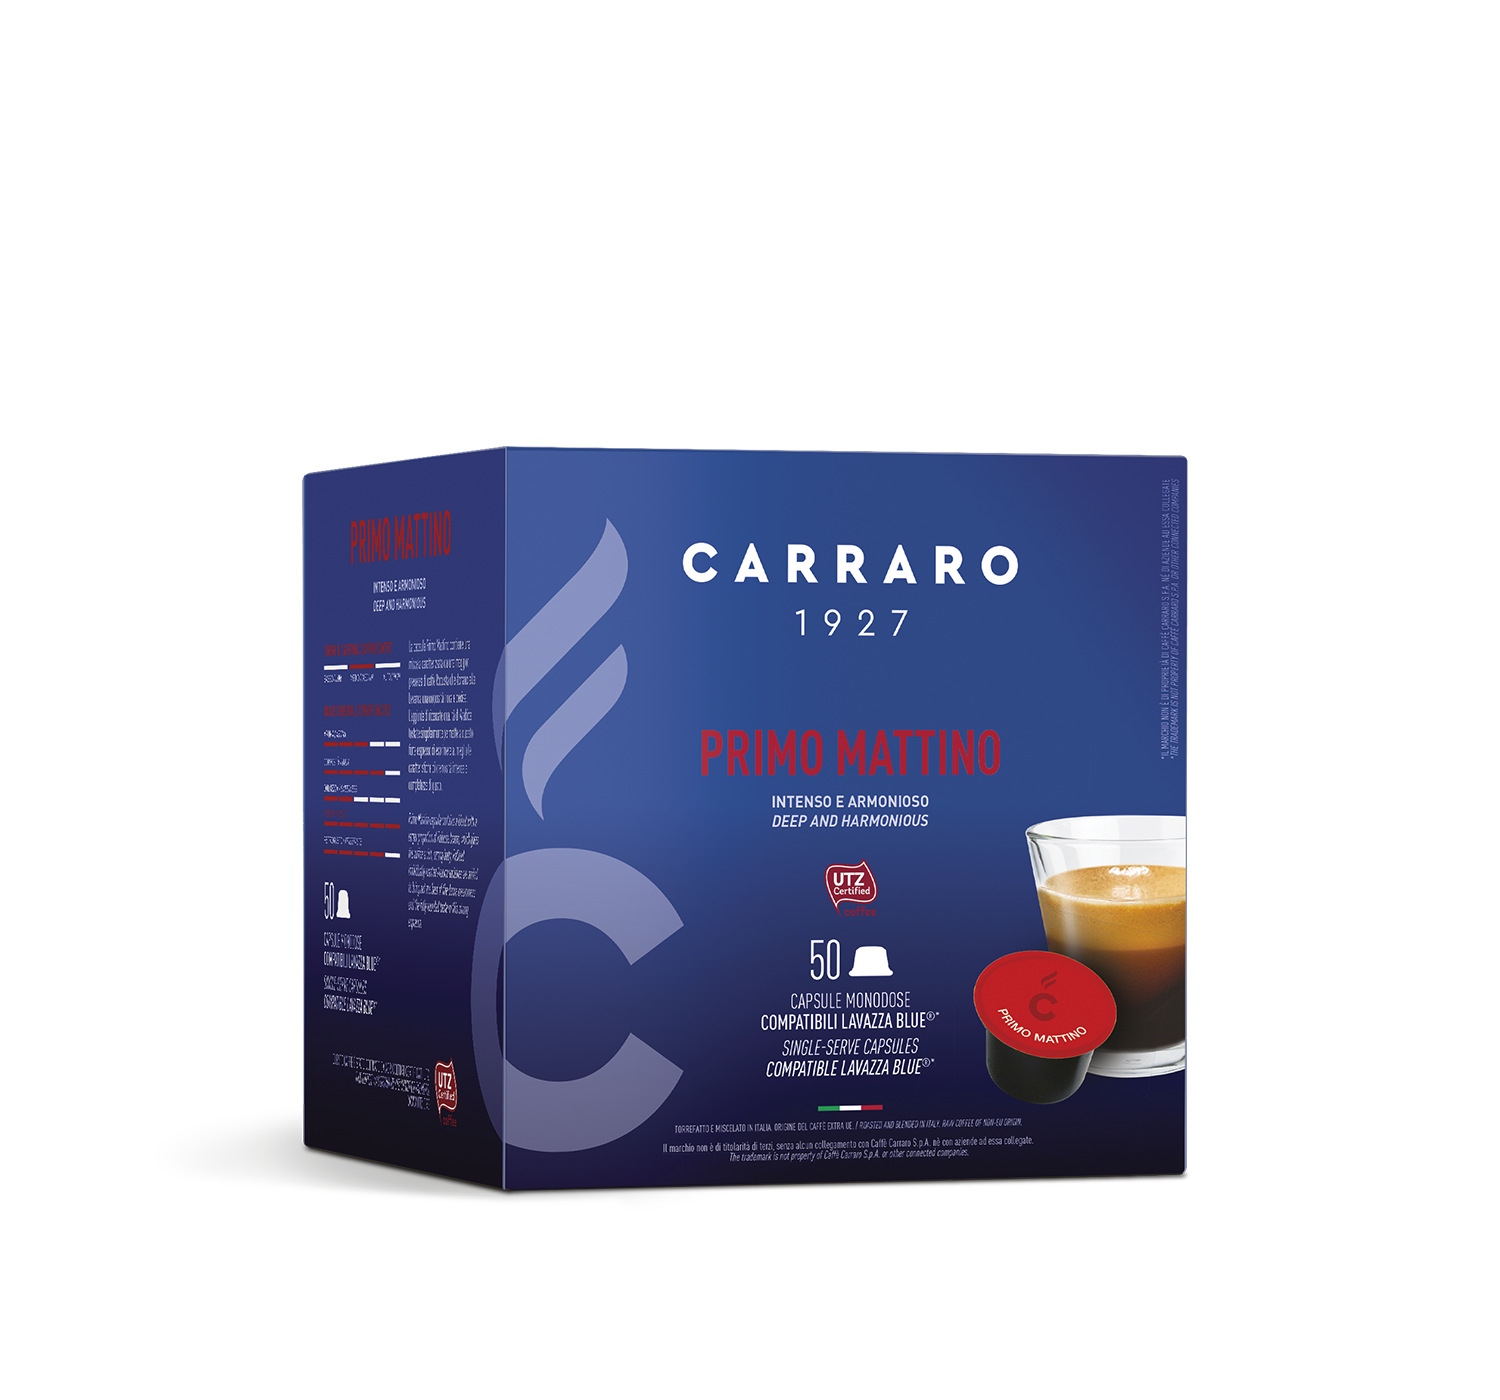 Capsules - Primo Mattino – 50 LAVAZZA BLUE®* COMPATIBLE CAPSULES - Shop online Caffè Carraro